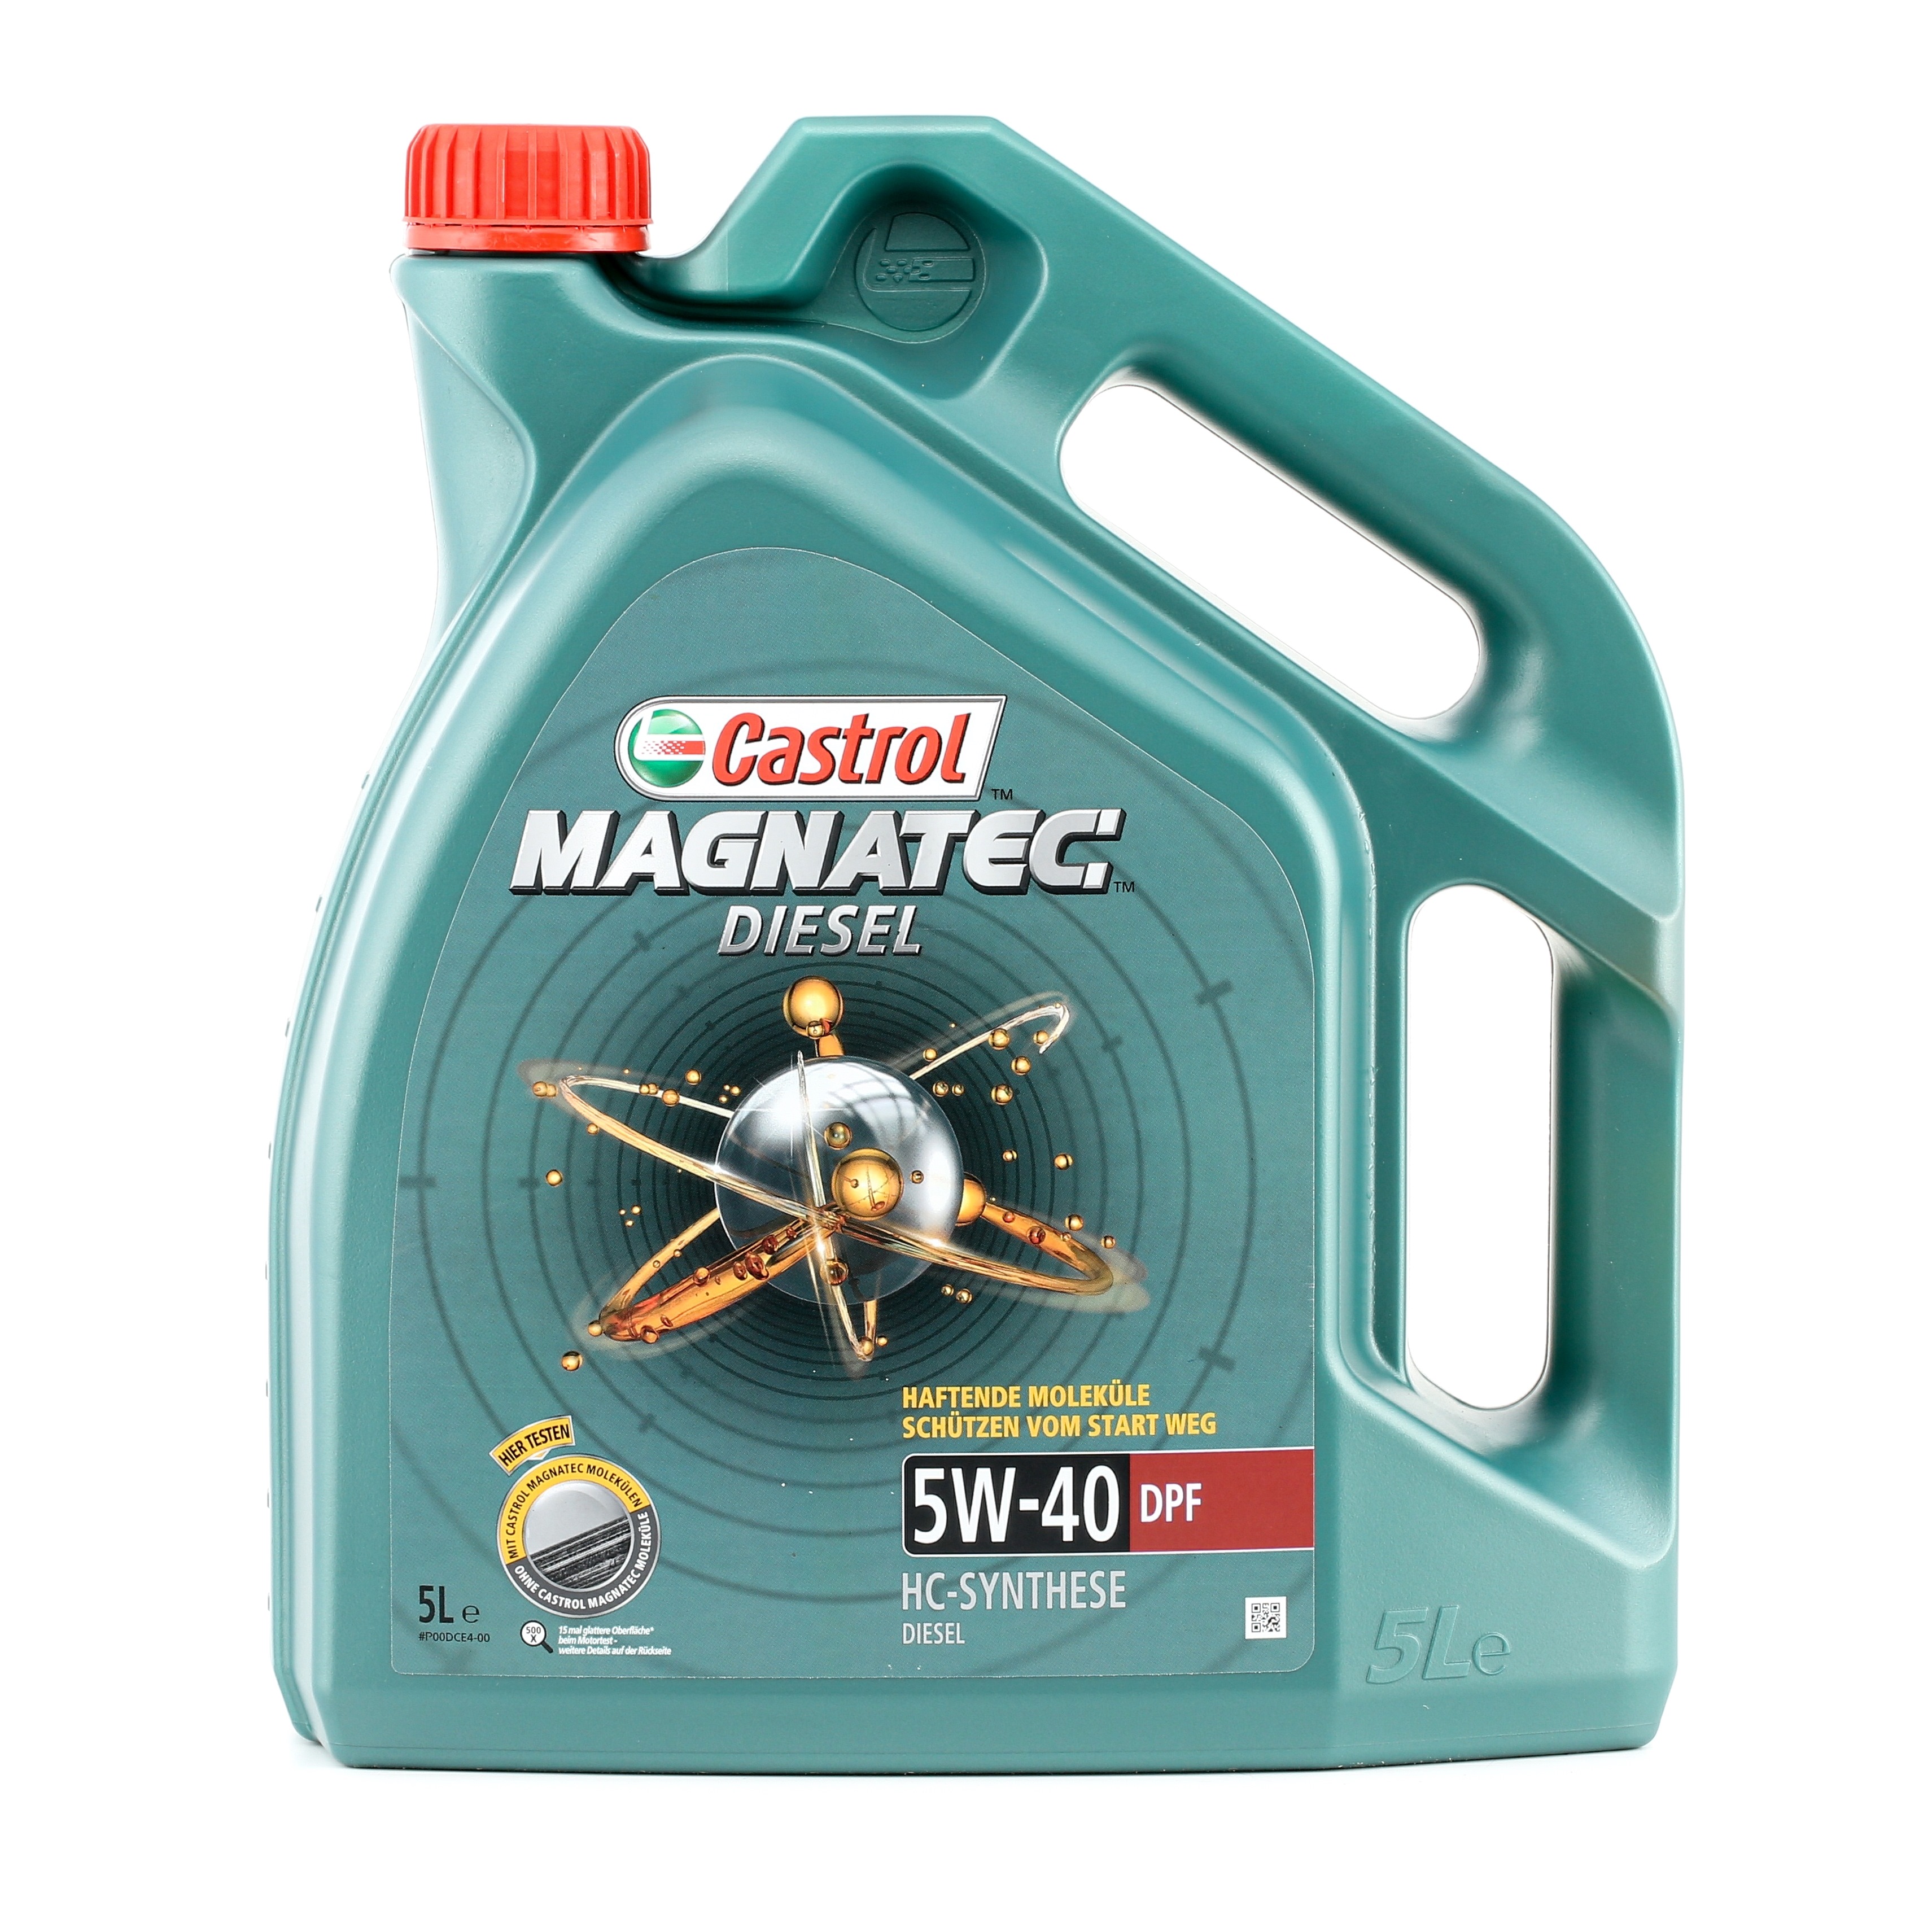 CASTROL Magnatec, Diesel DPF 1502BA Olie 5W-40, 5L, Synthetische olie